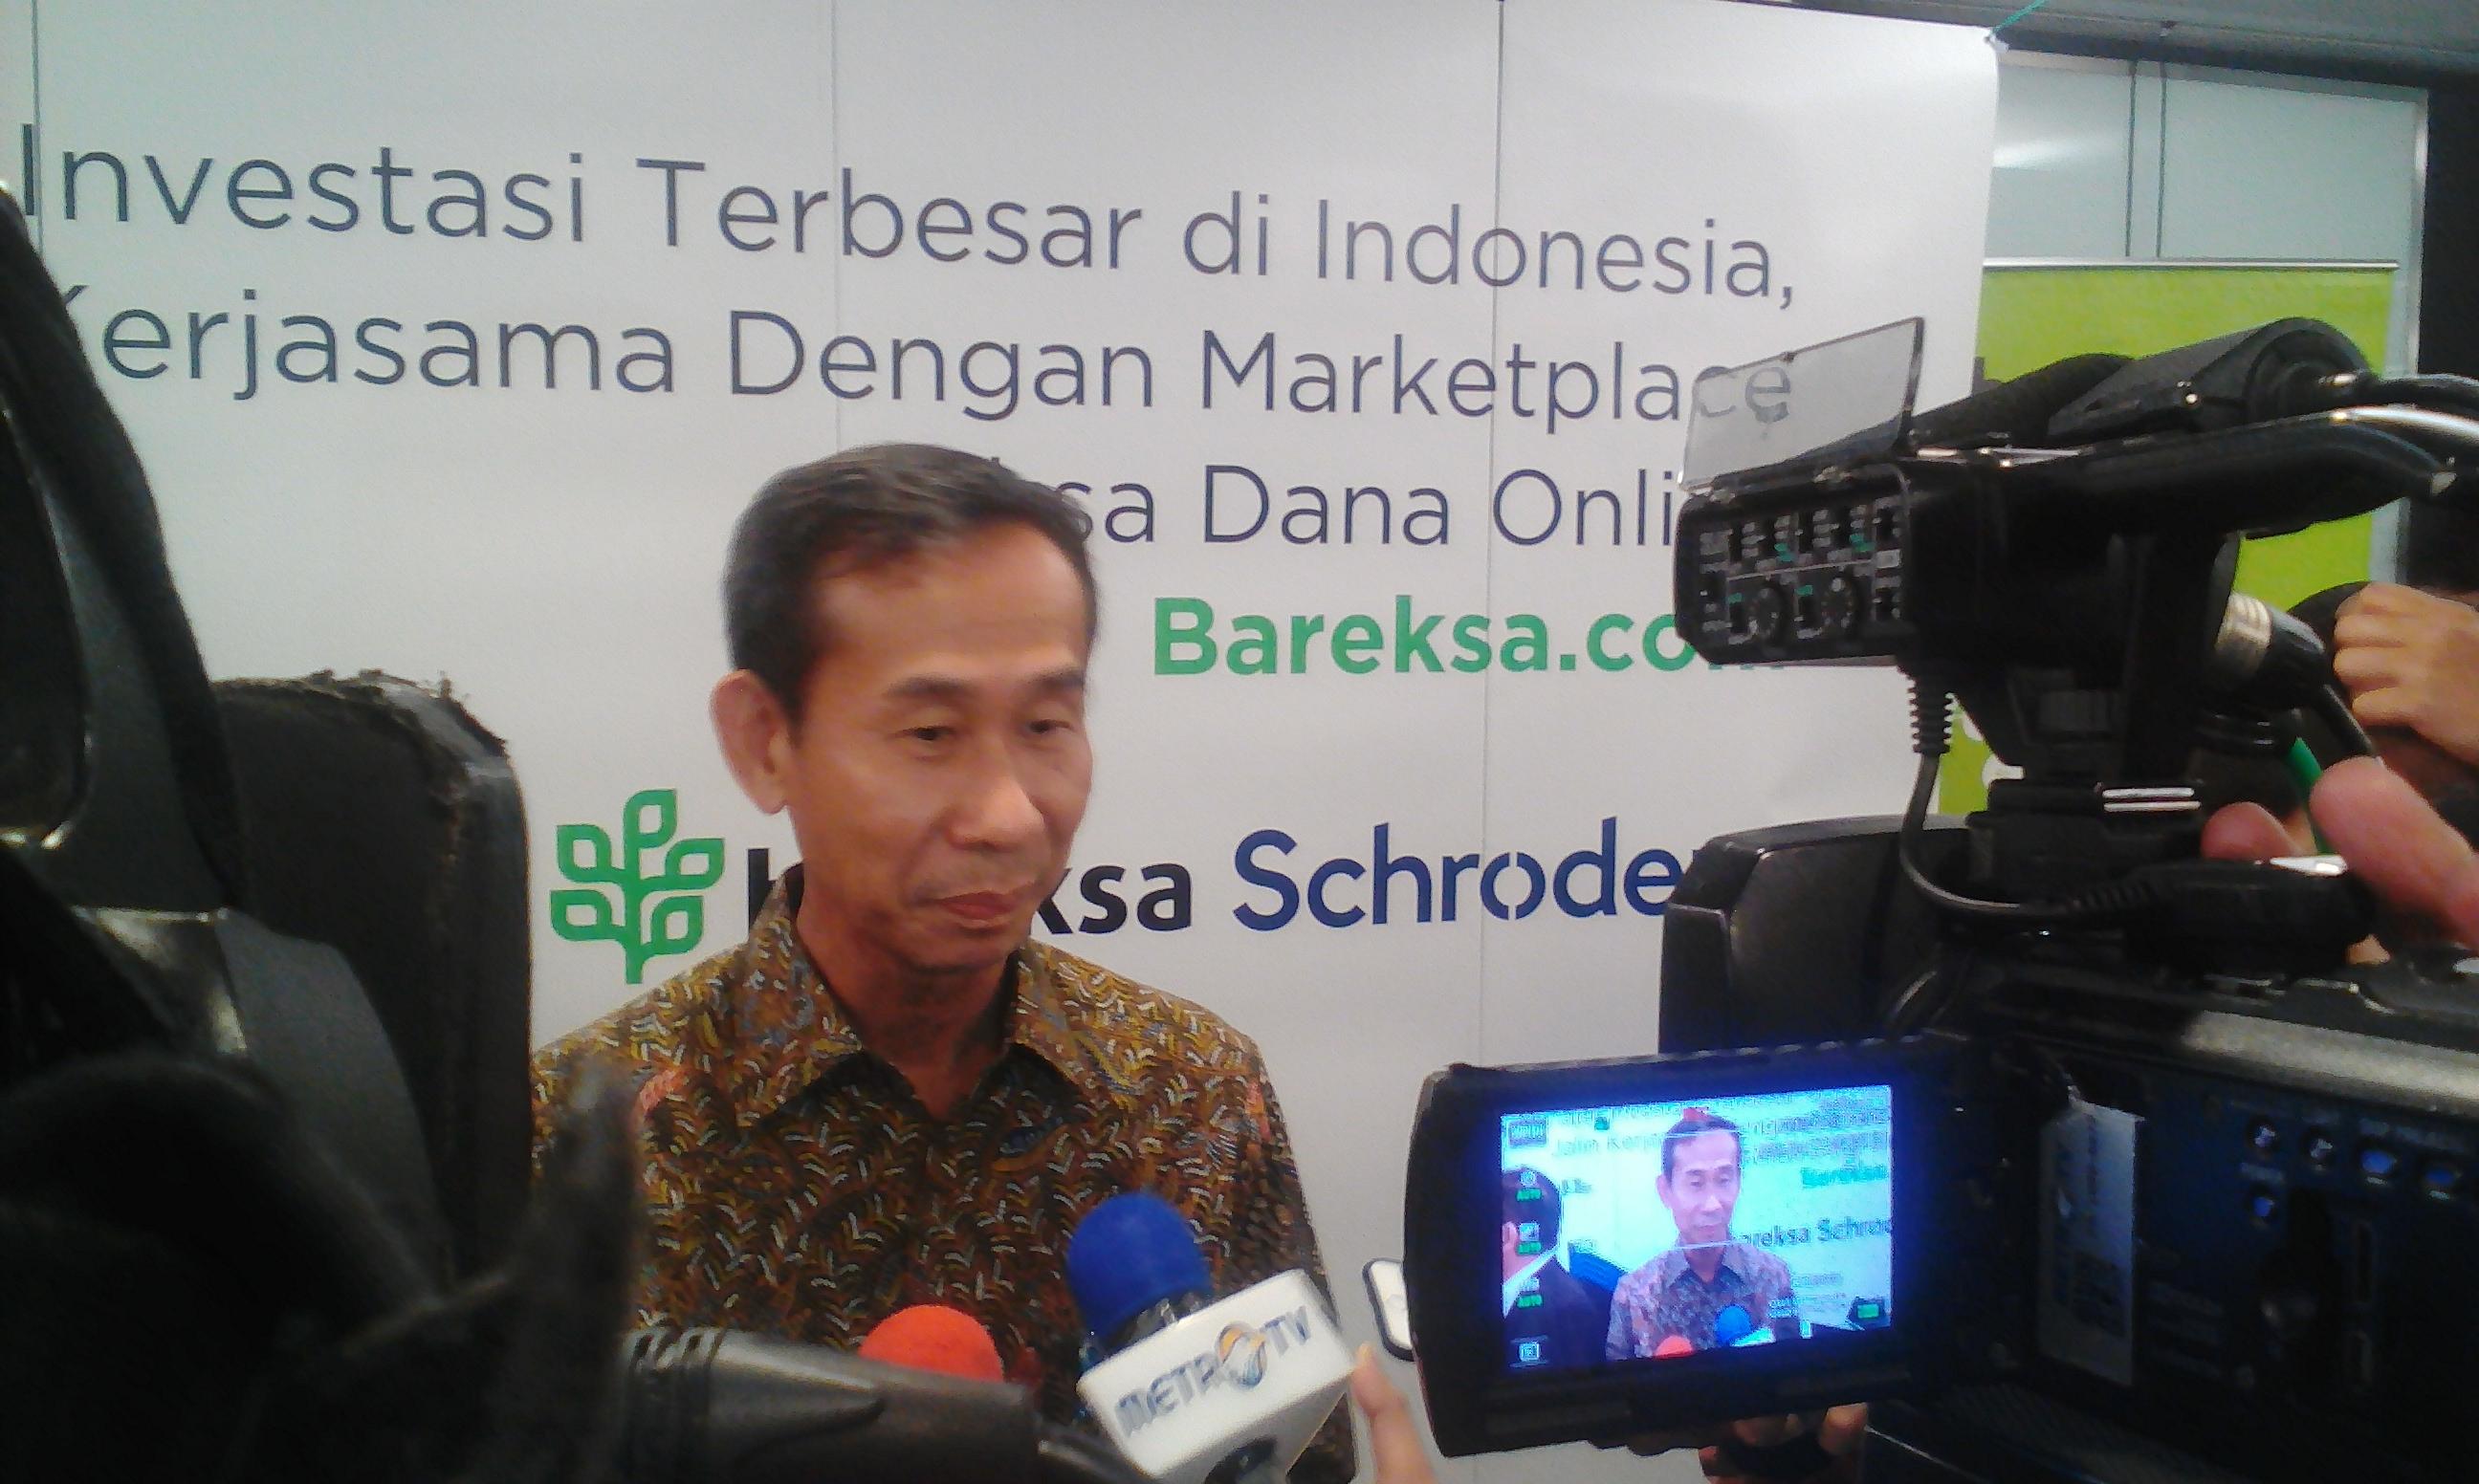 Ini Alasan Schroder Indonesia Menjual Reksa Dana Secara Online di Bareksa